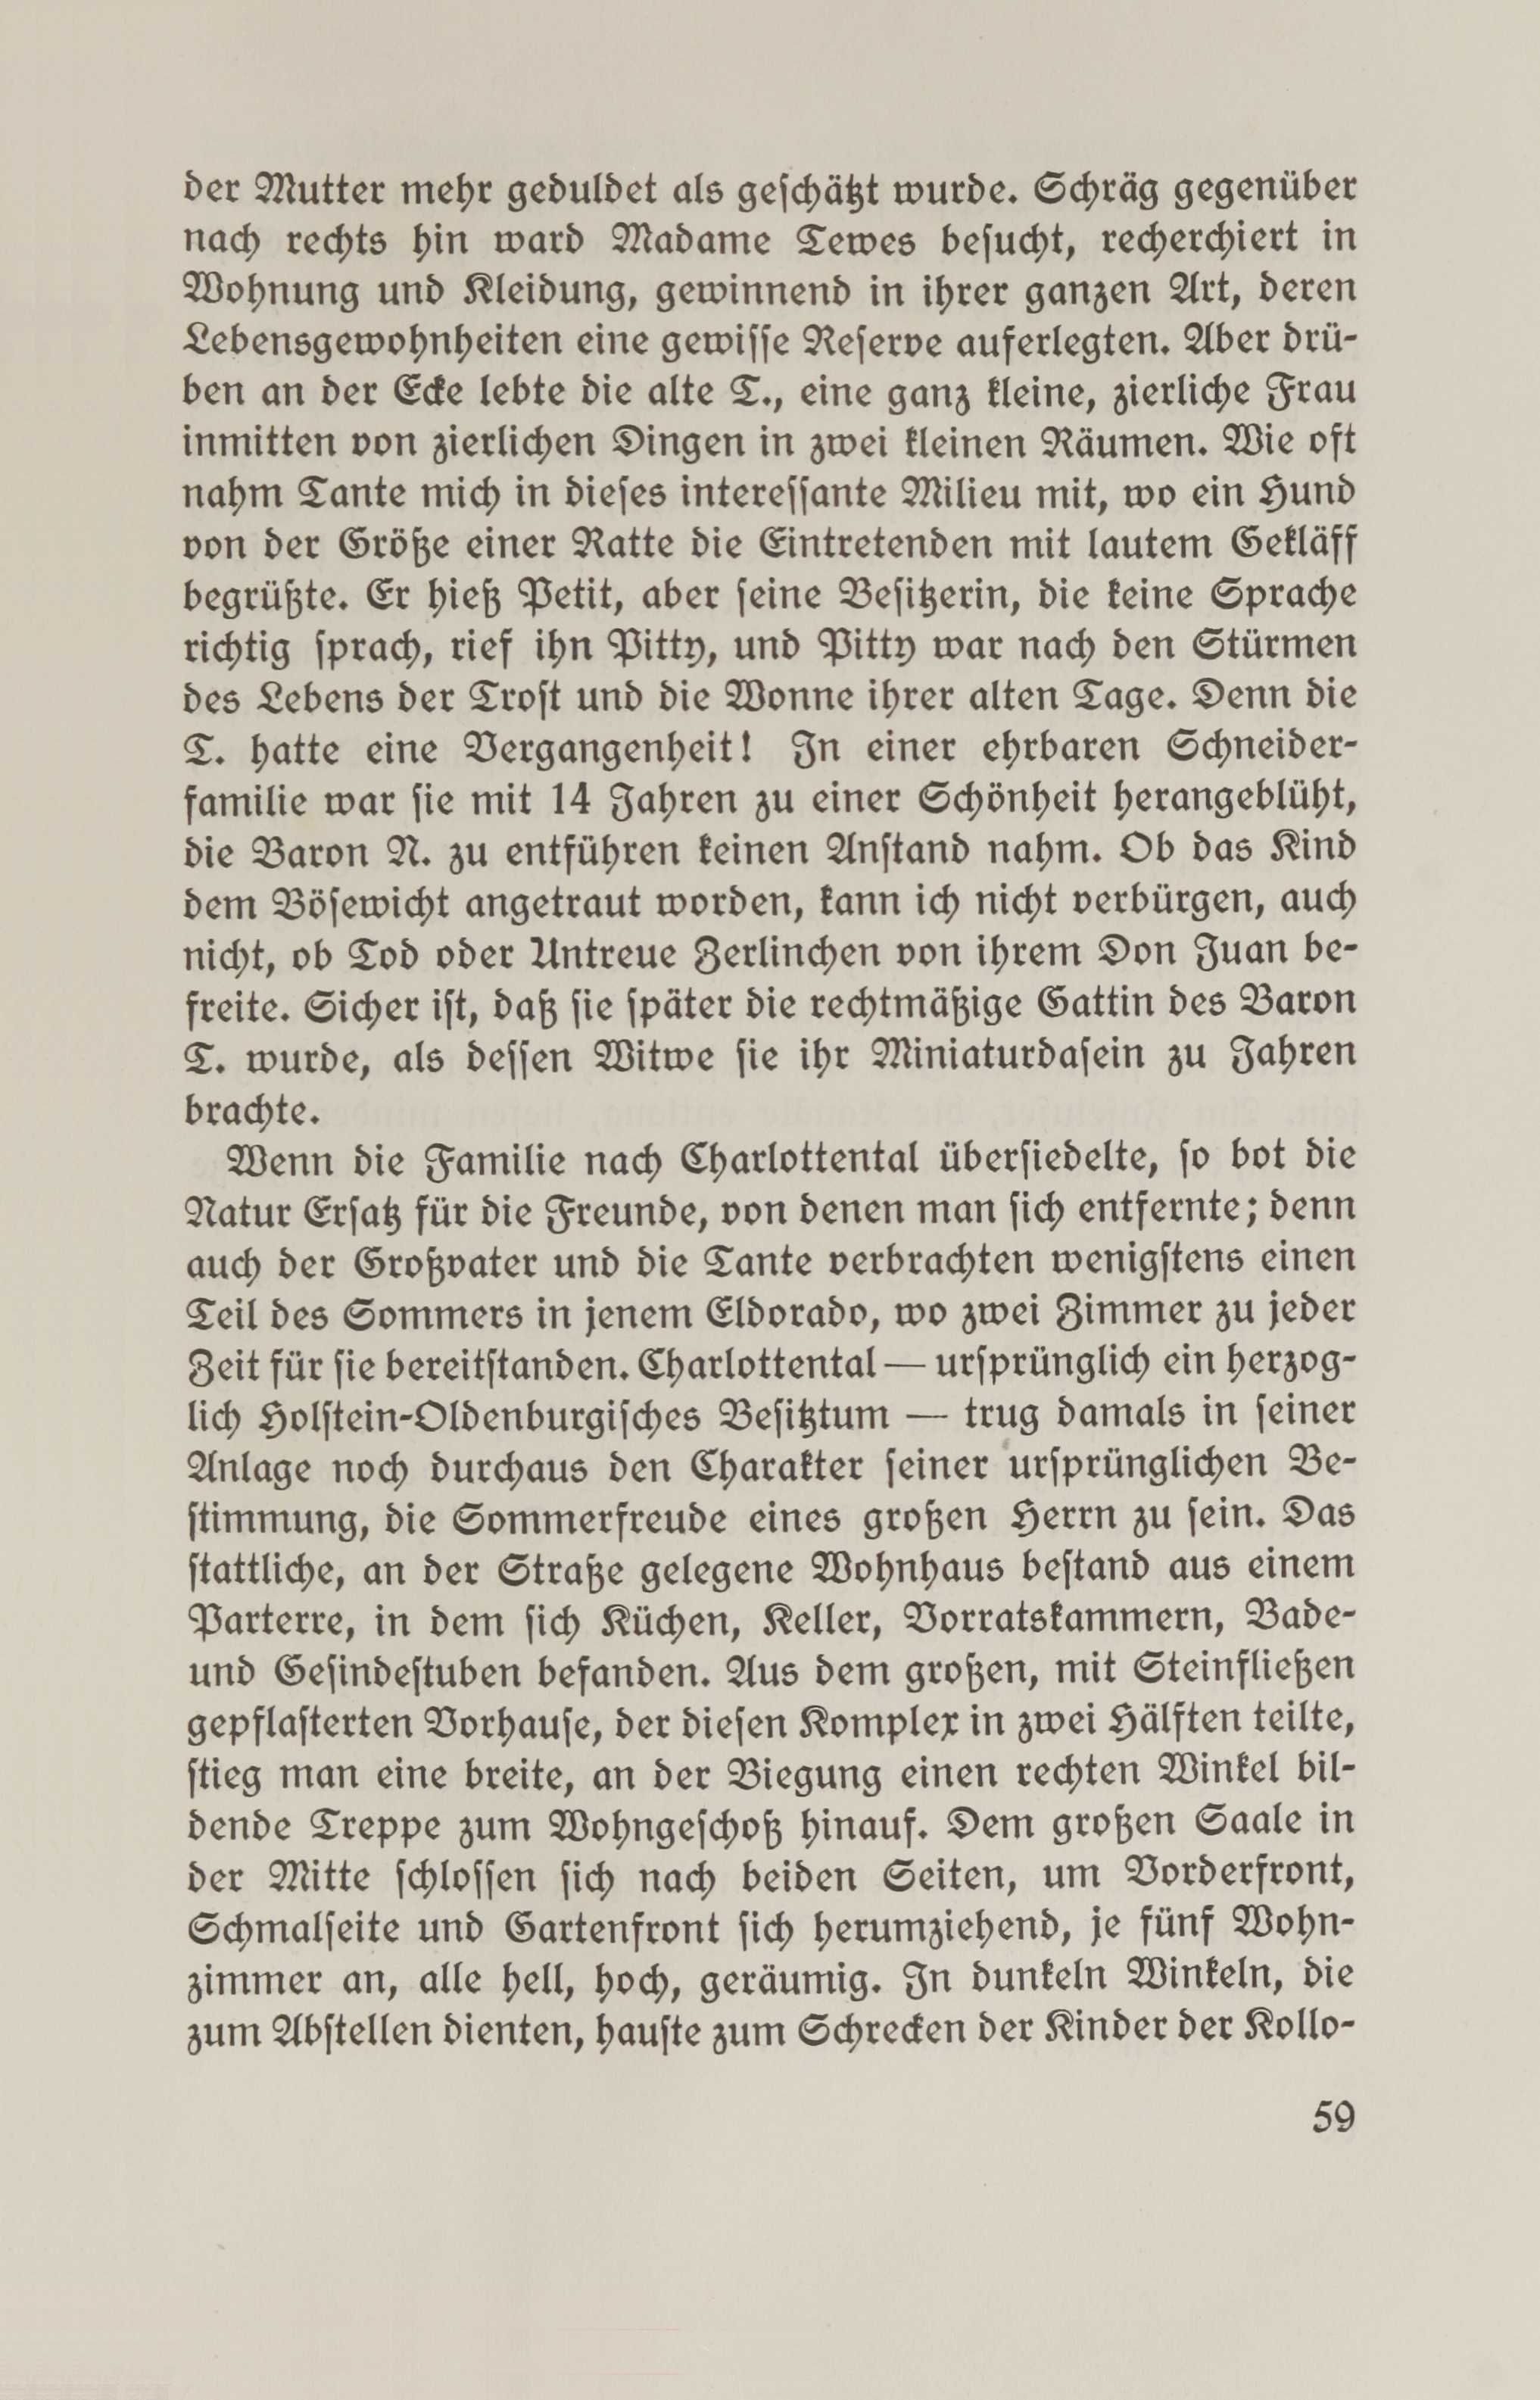 Baltische Lebenserinnerungen (1926) | 58. (59) Main body of text